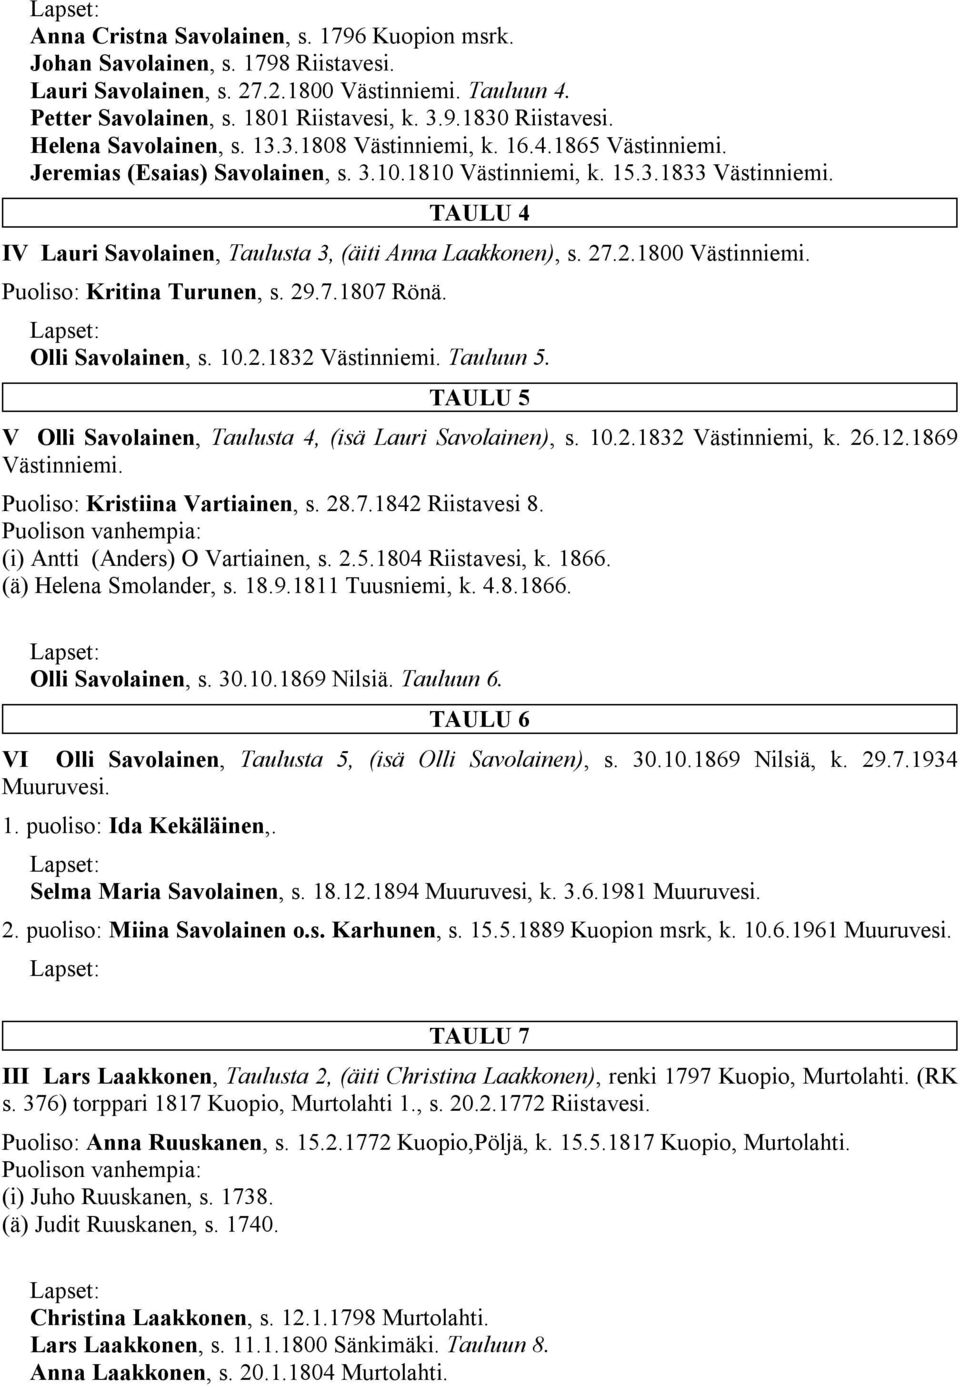 TAULU 4 IV Lauri Savolainen, Taulusta 3, (äiti Anna Laakkonen), s. 27.2.1800 Västinniemi. Puoliso: Kritina Turunen, s. 29.7.1807 Rönä. Olli Savolainen, s. 10.2.1832 Västinniemi. Tauluun 5.